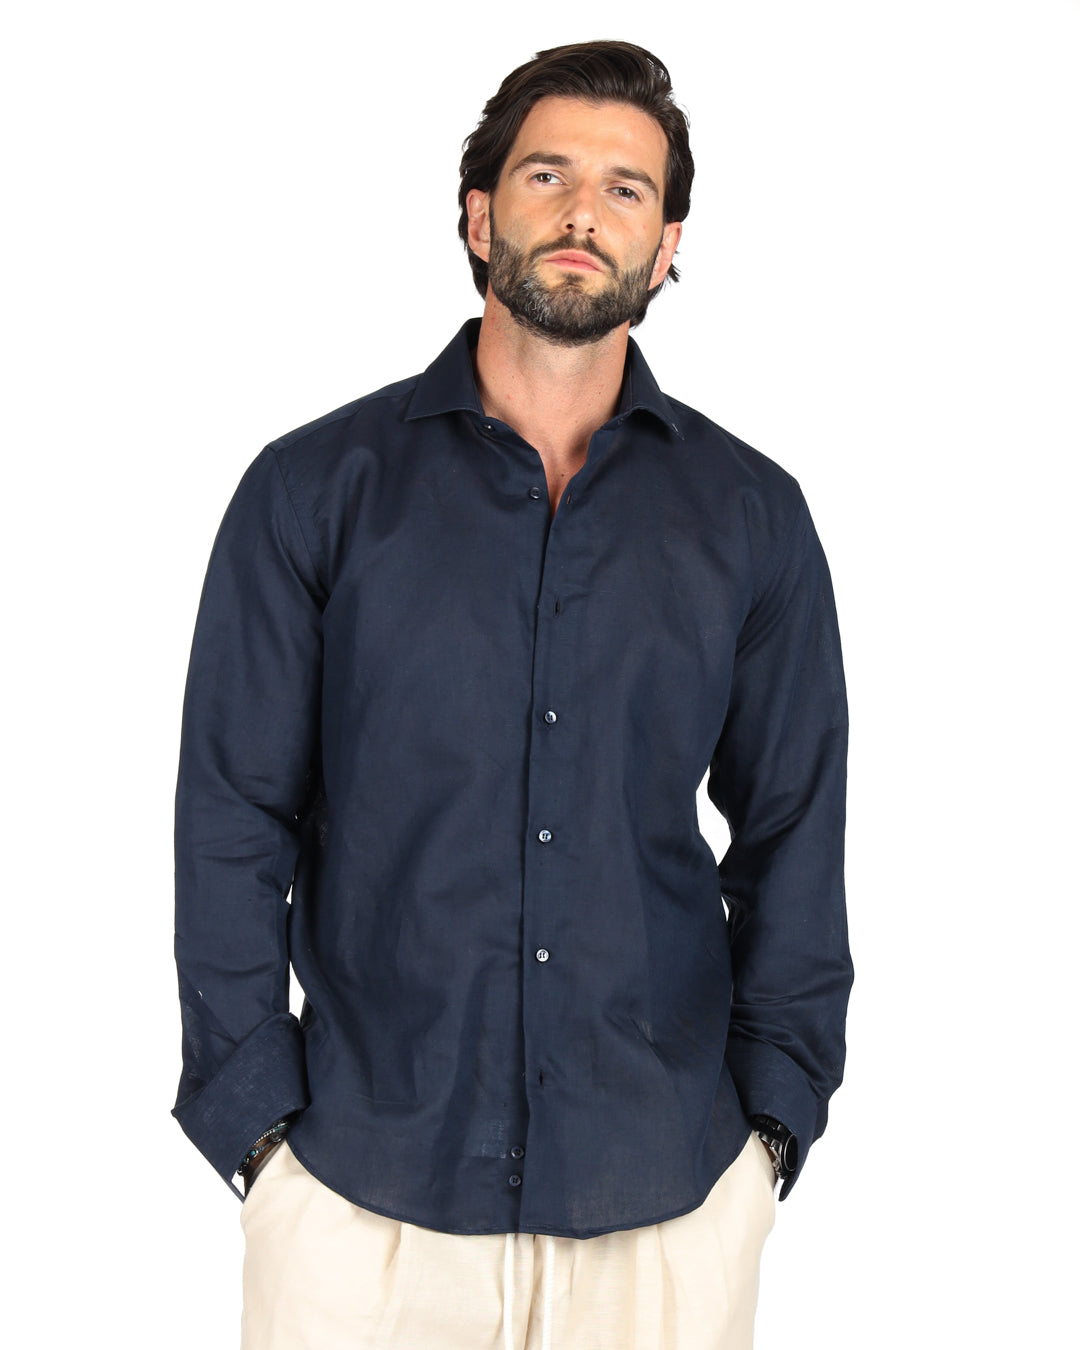 Praiano - Classic blue linen shirt